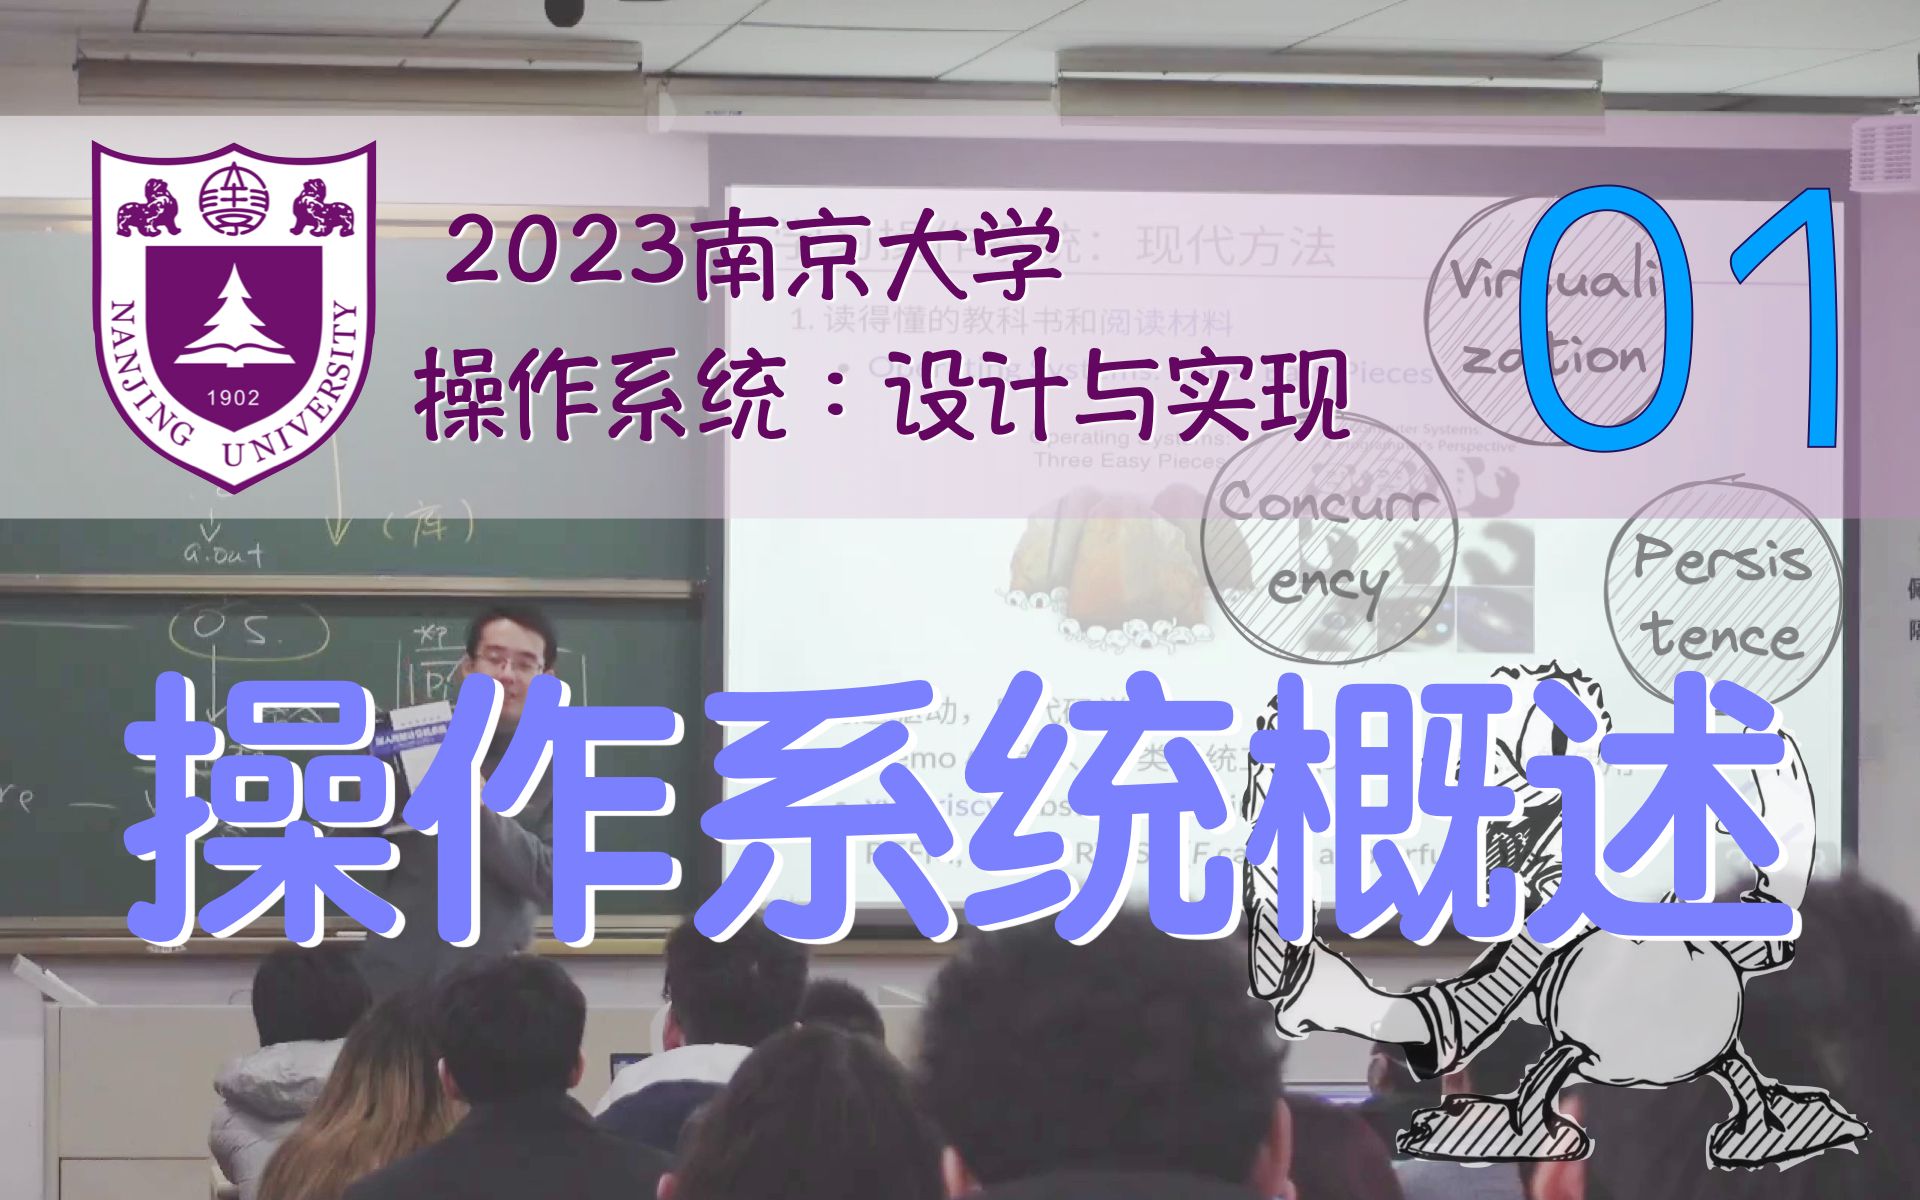 操作系统概述 (操作系统的历史；学习建议) [南京大学2023操作系统-P1] (蒋炎岩)